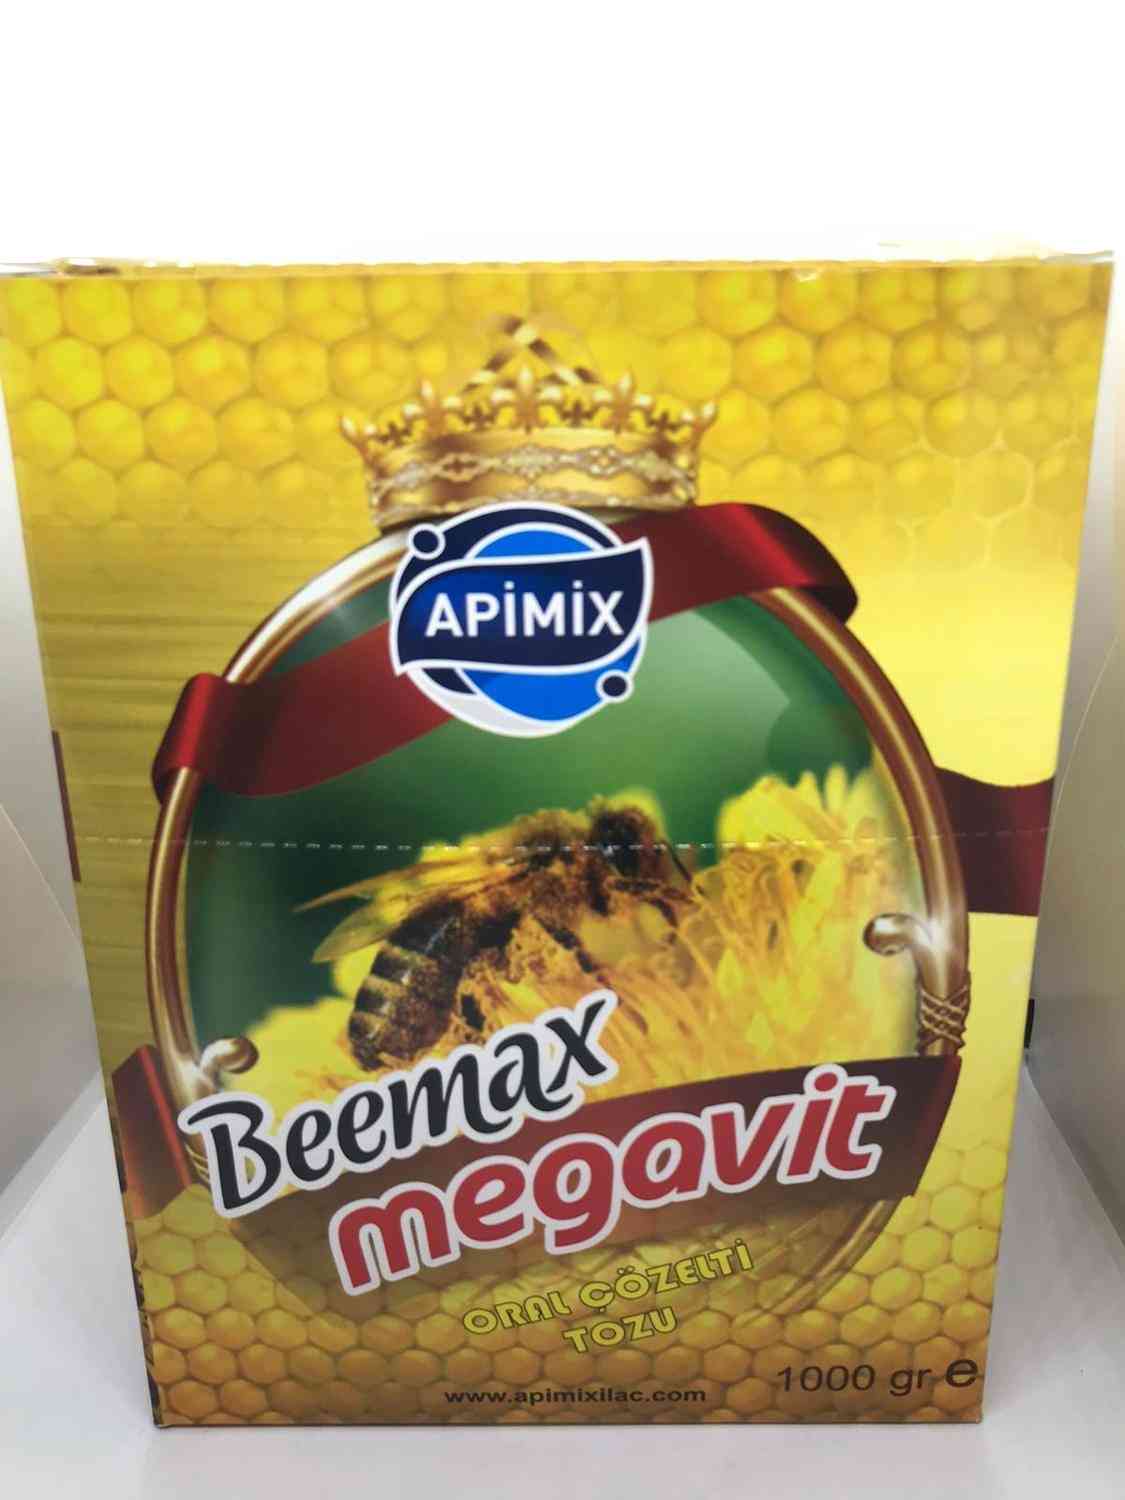 Beemax Megavit- Oral Cozelti, Multivitamin Honey Bee